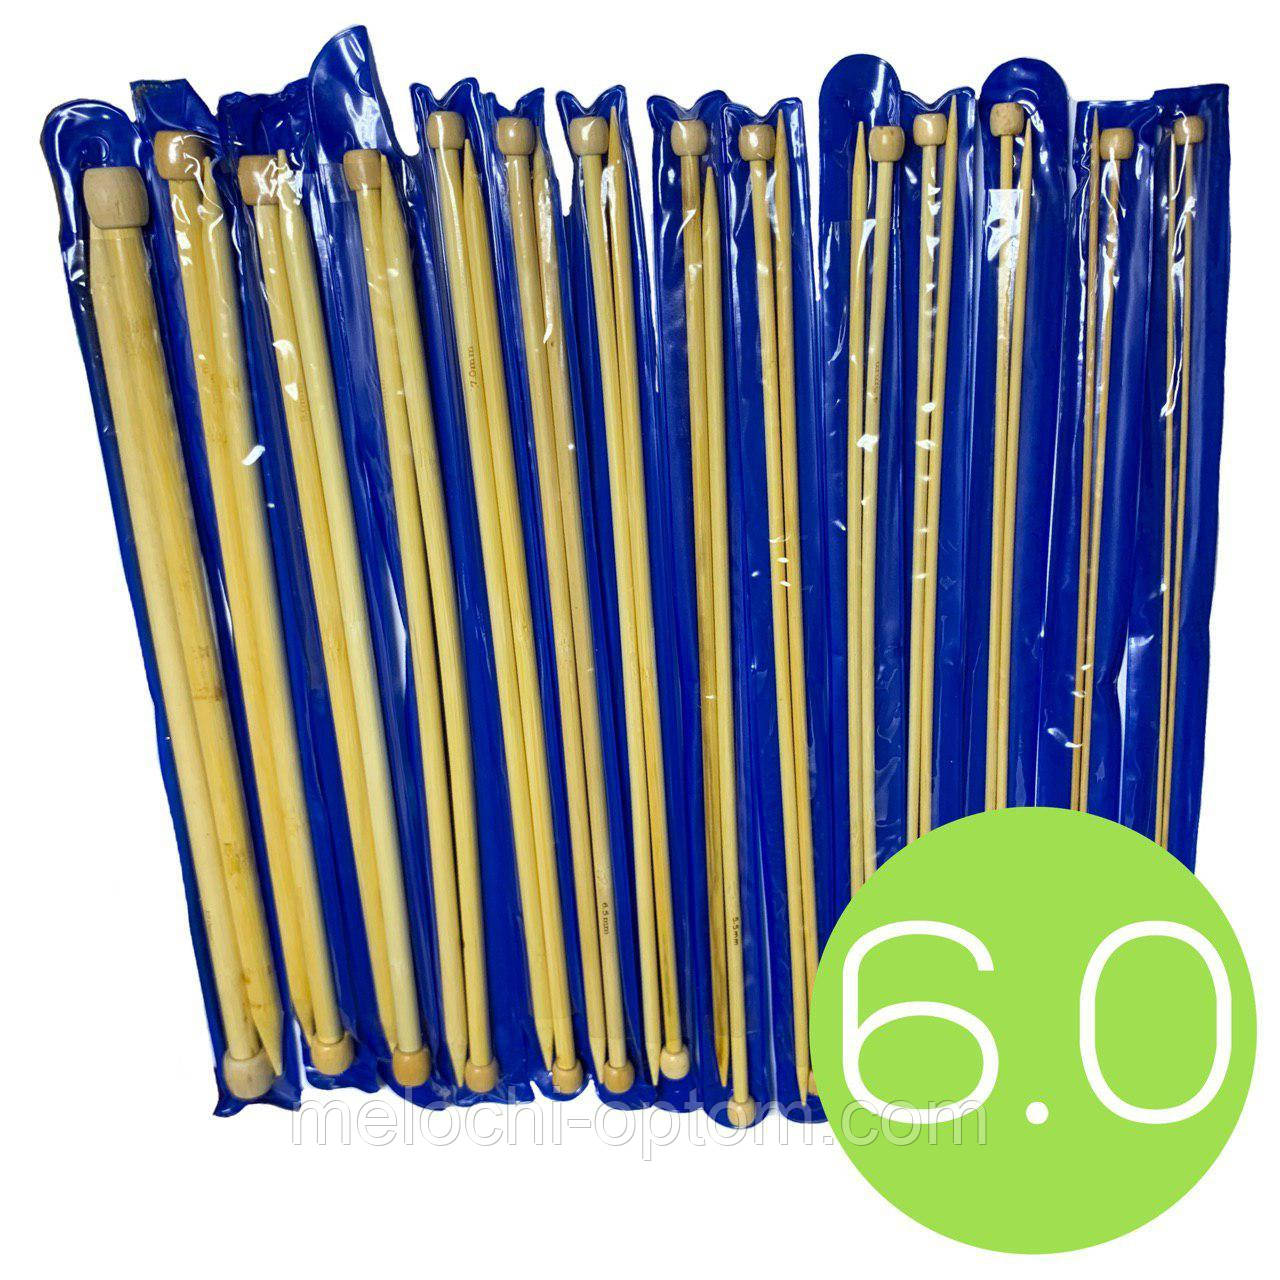 Спиці для в'язання №6.0 (350mm) бамбукові